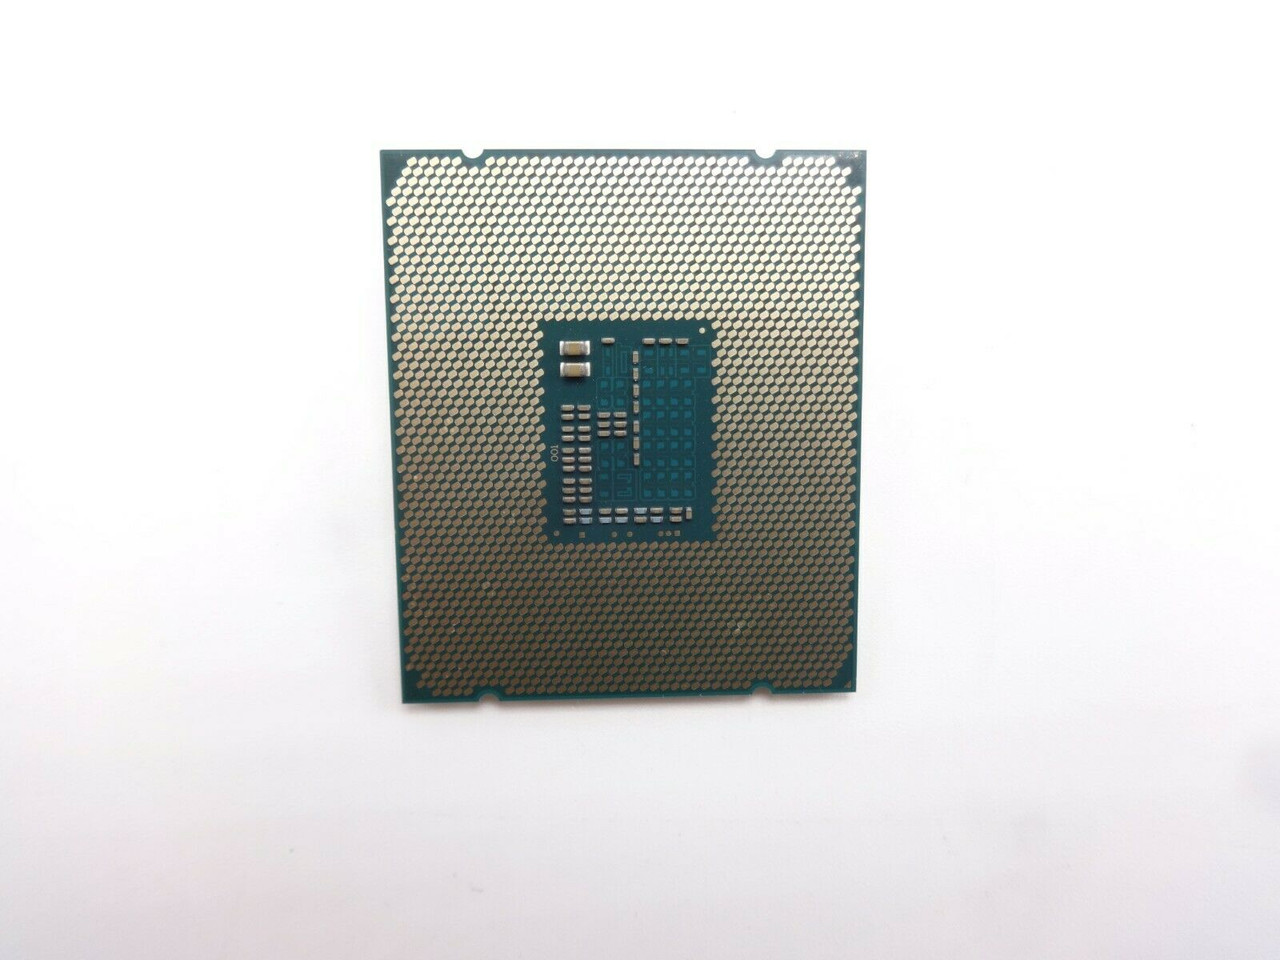 Intel Xeon SR207 6Core E5-2620 V3 2.4Ghz 15MB Processor Chip